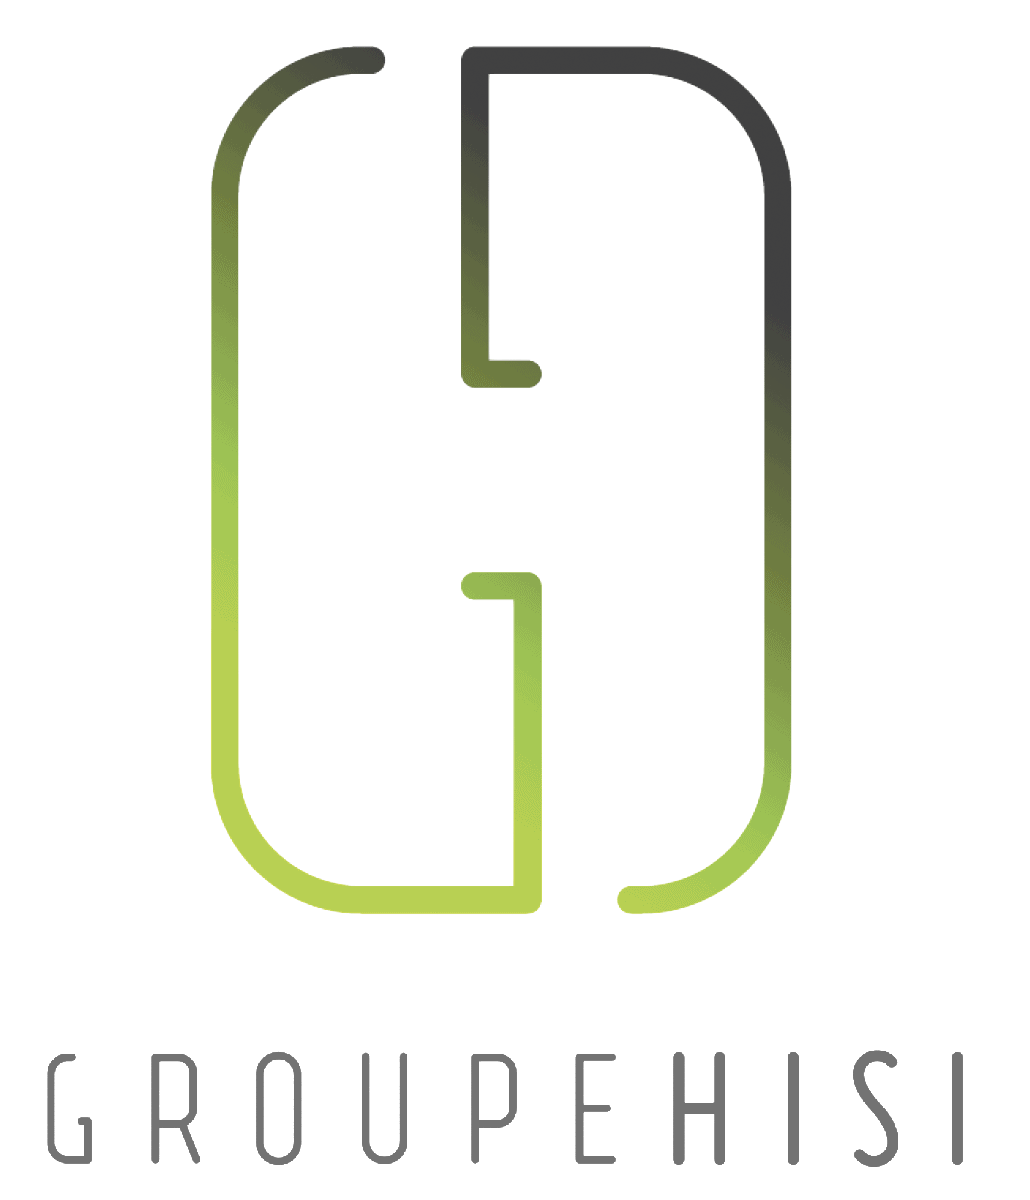 Logo groupe HISI